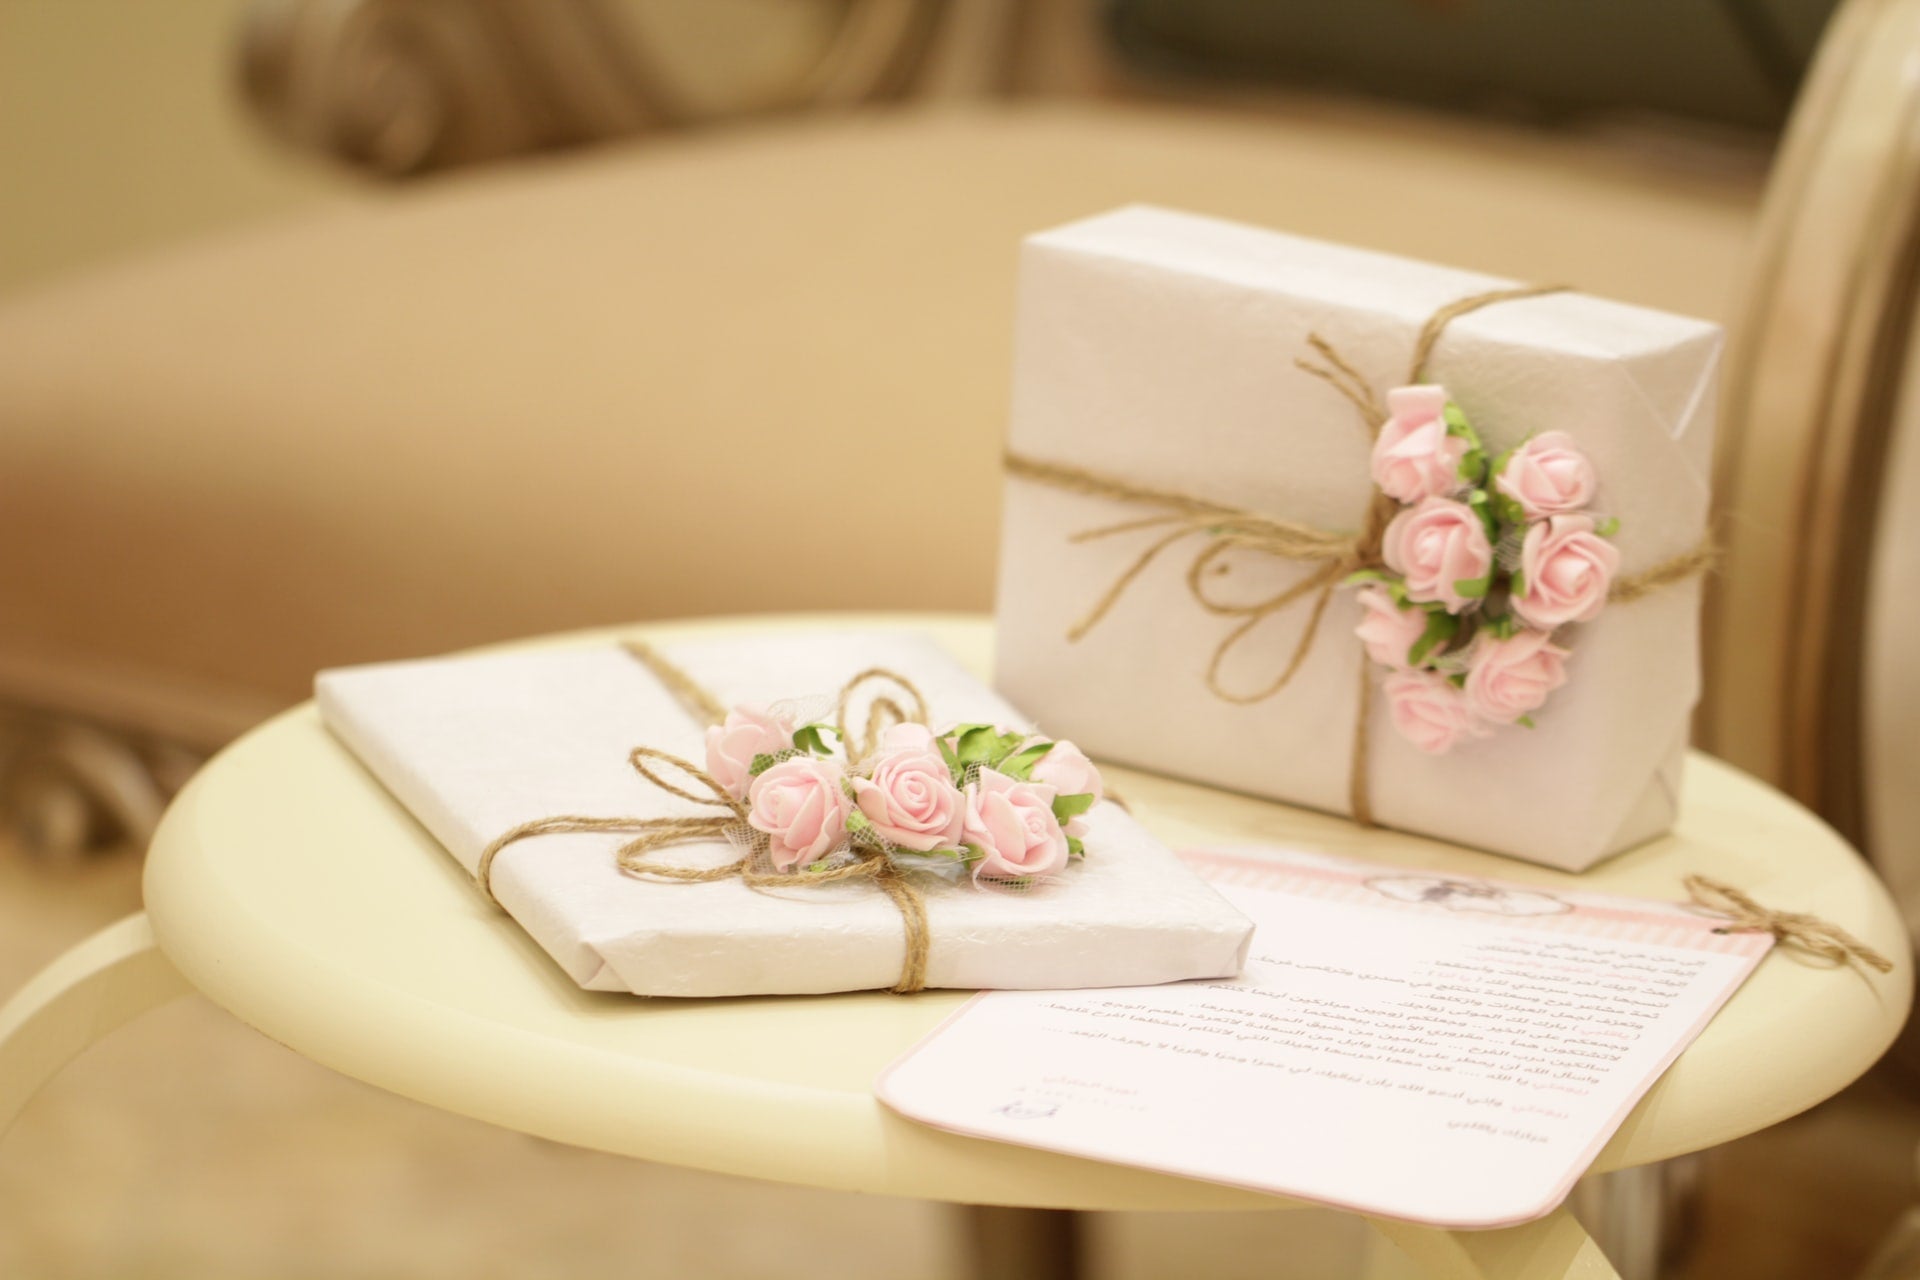 Wedding Gift Images - Free Download on Freepik